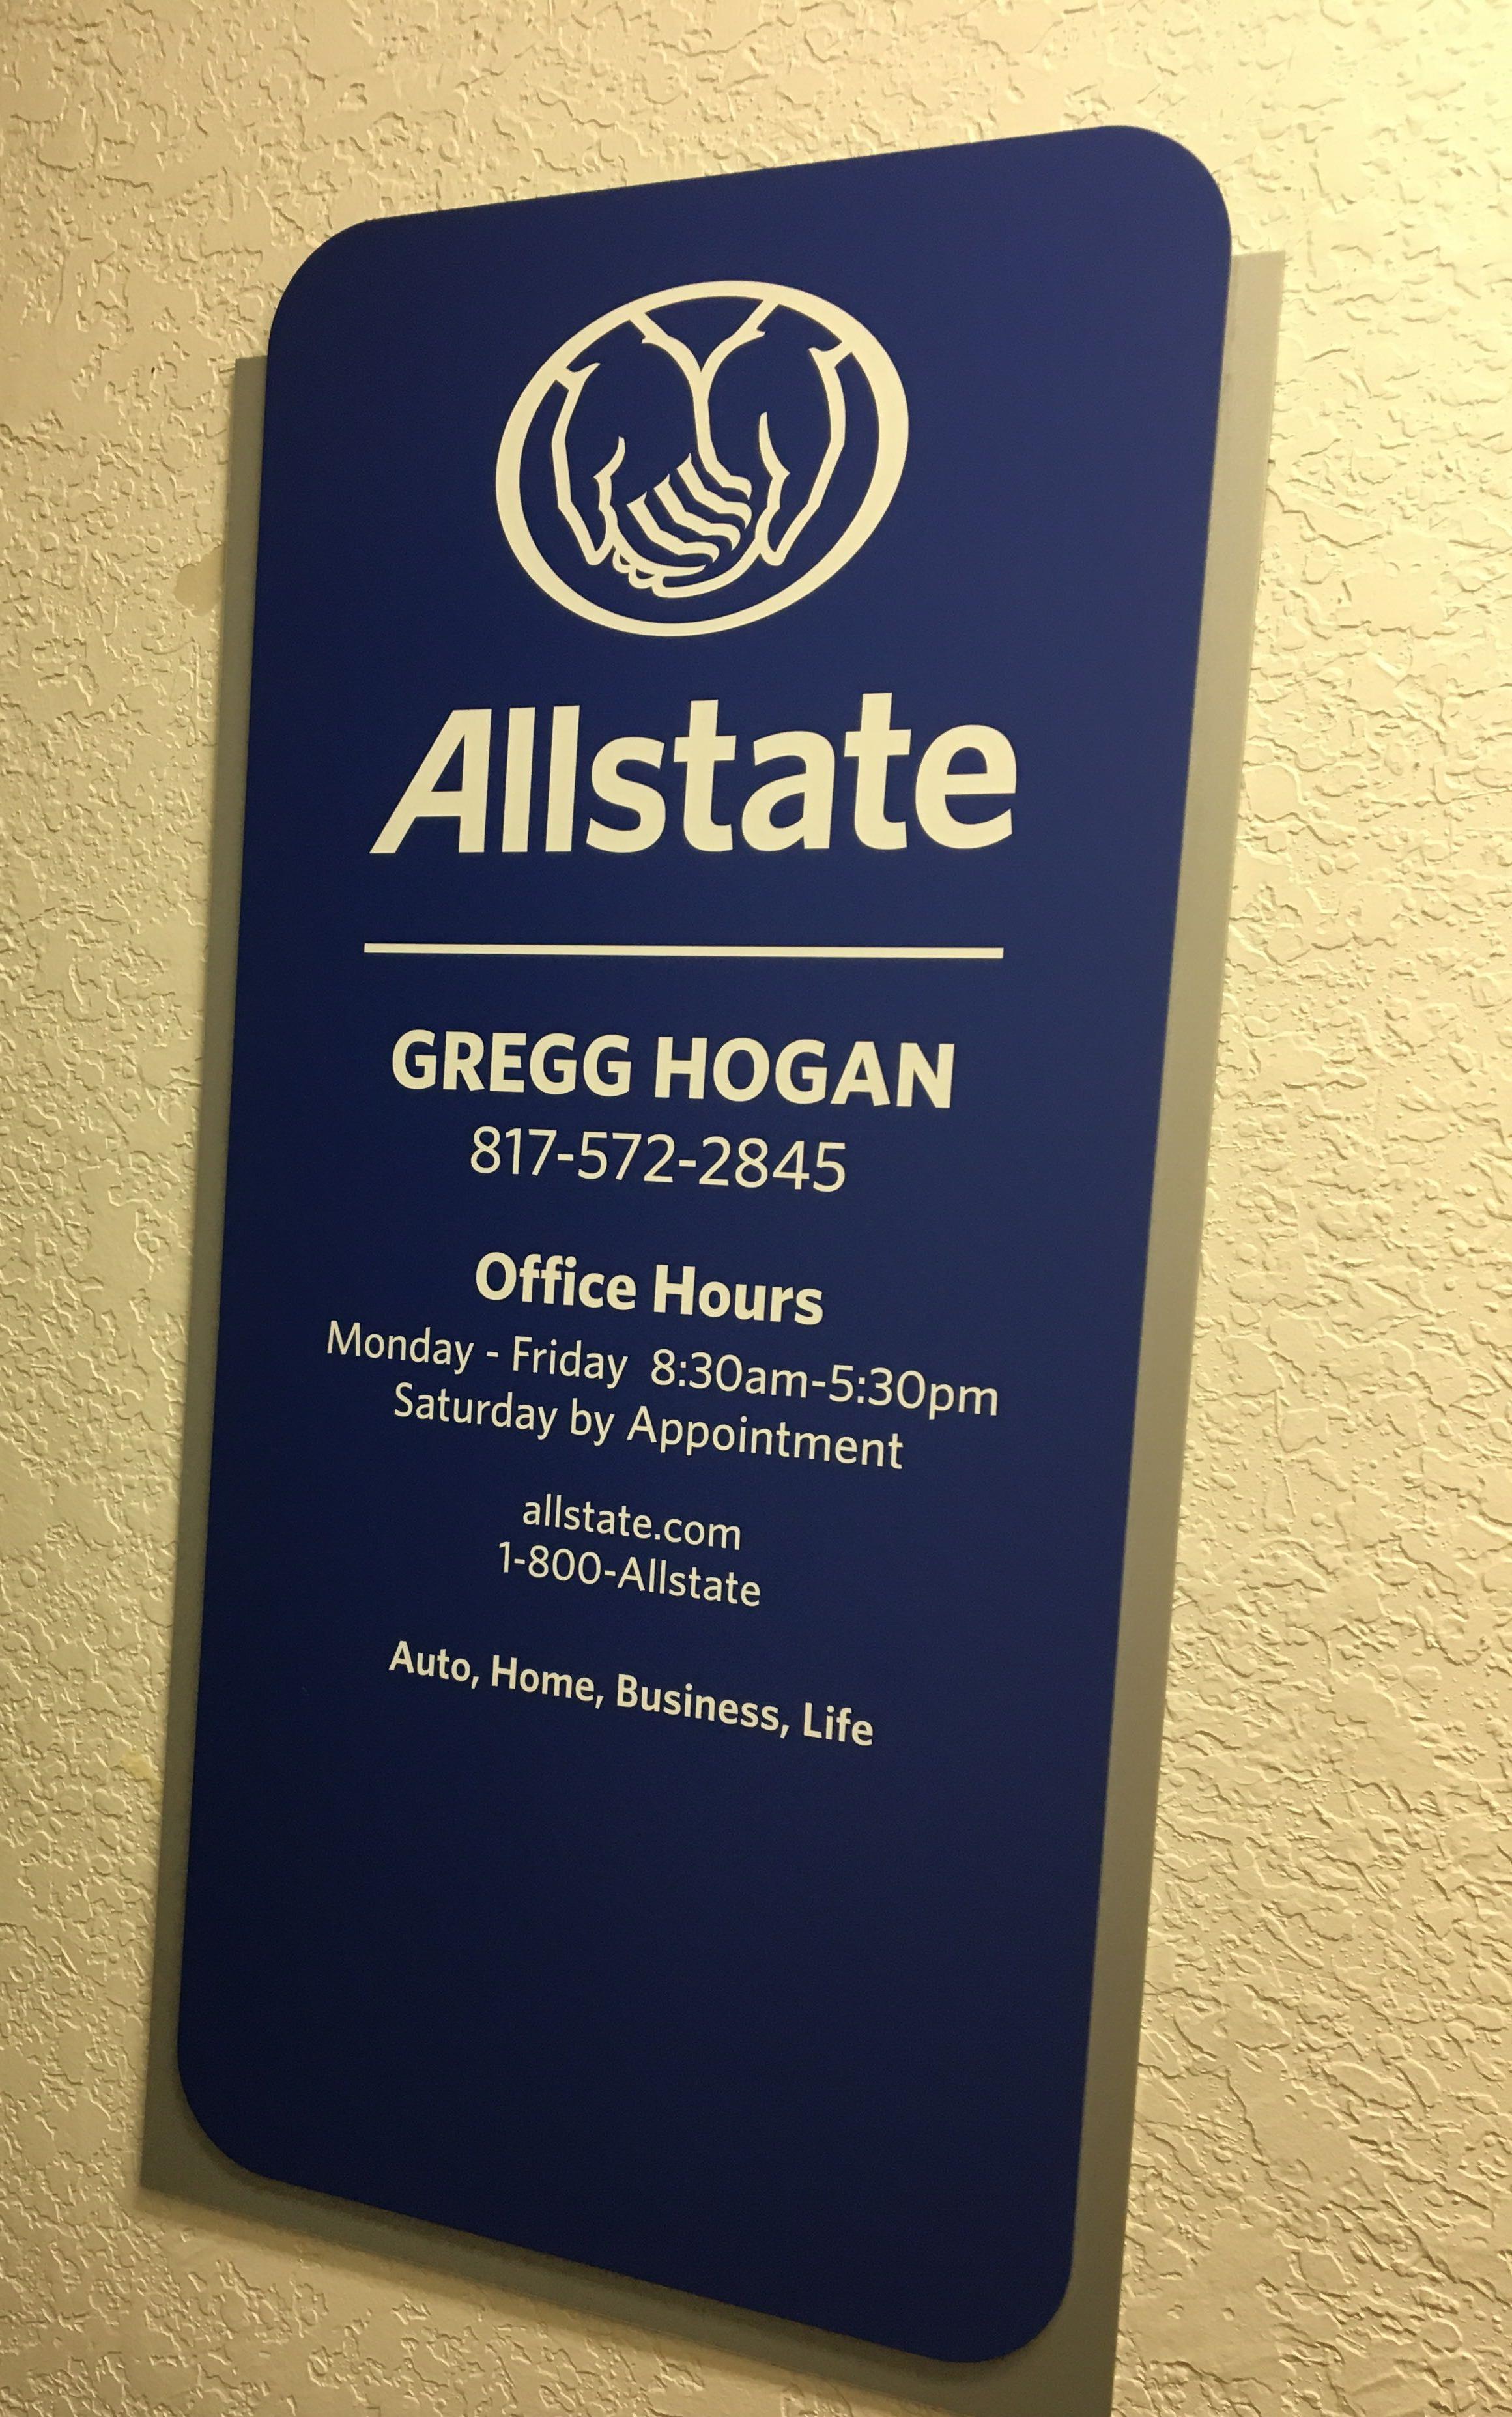 Gregg Hogan: Allstate Insurance Photo